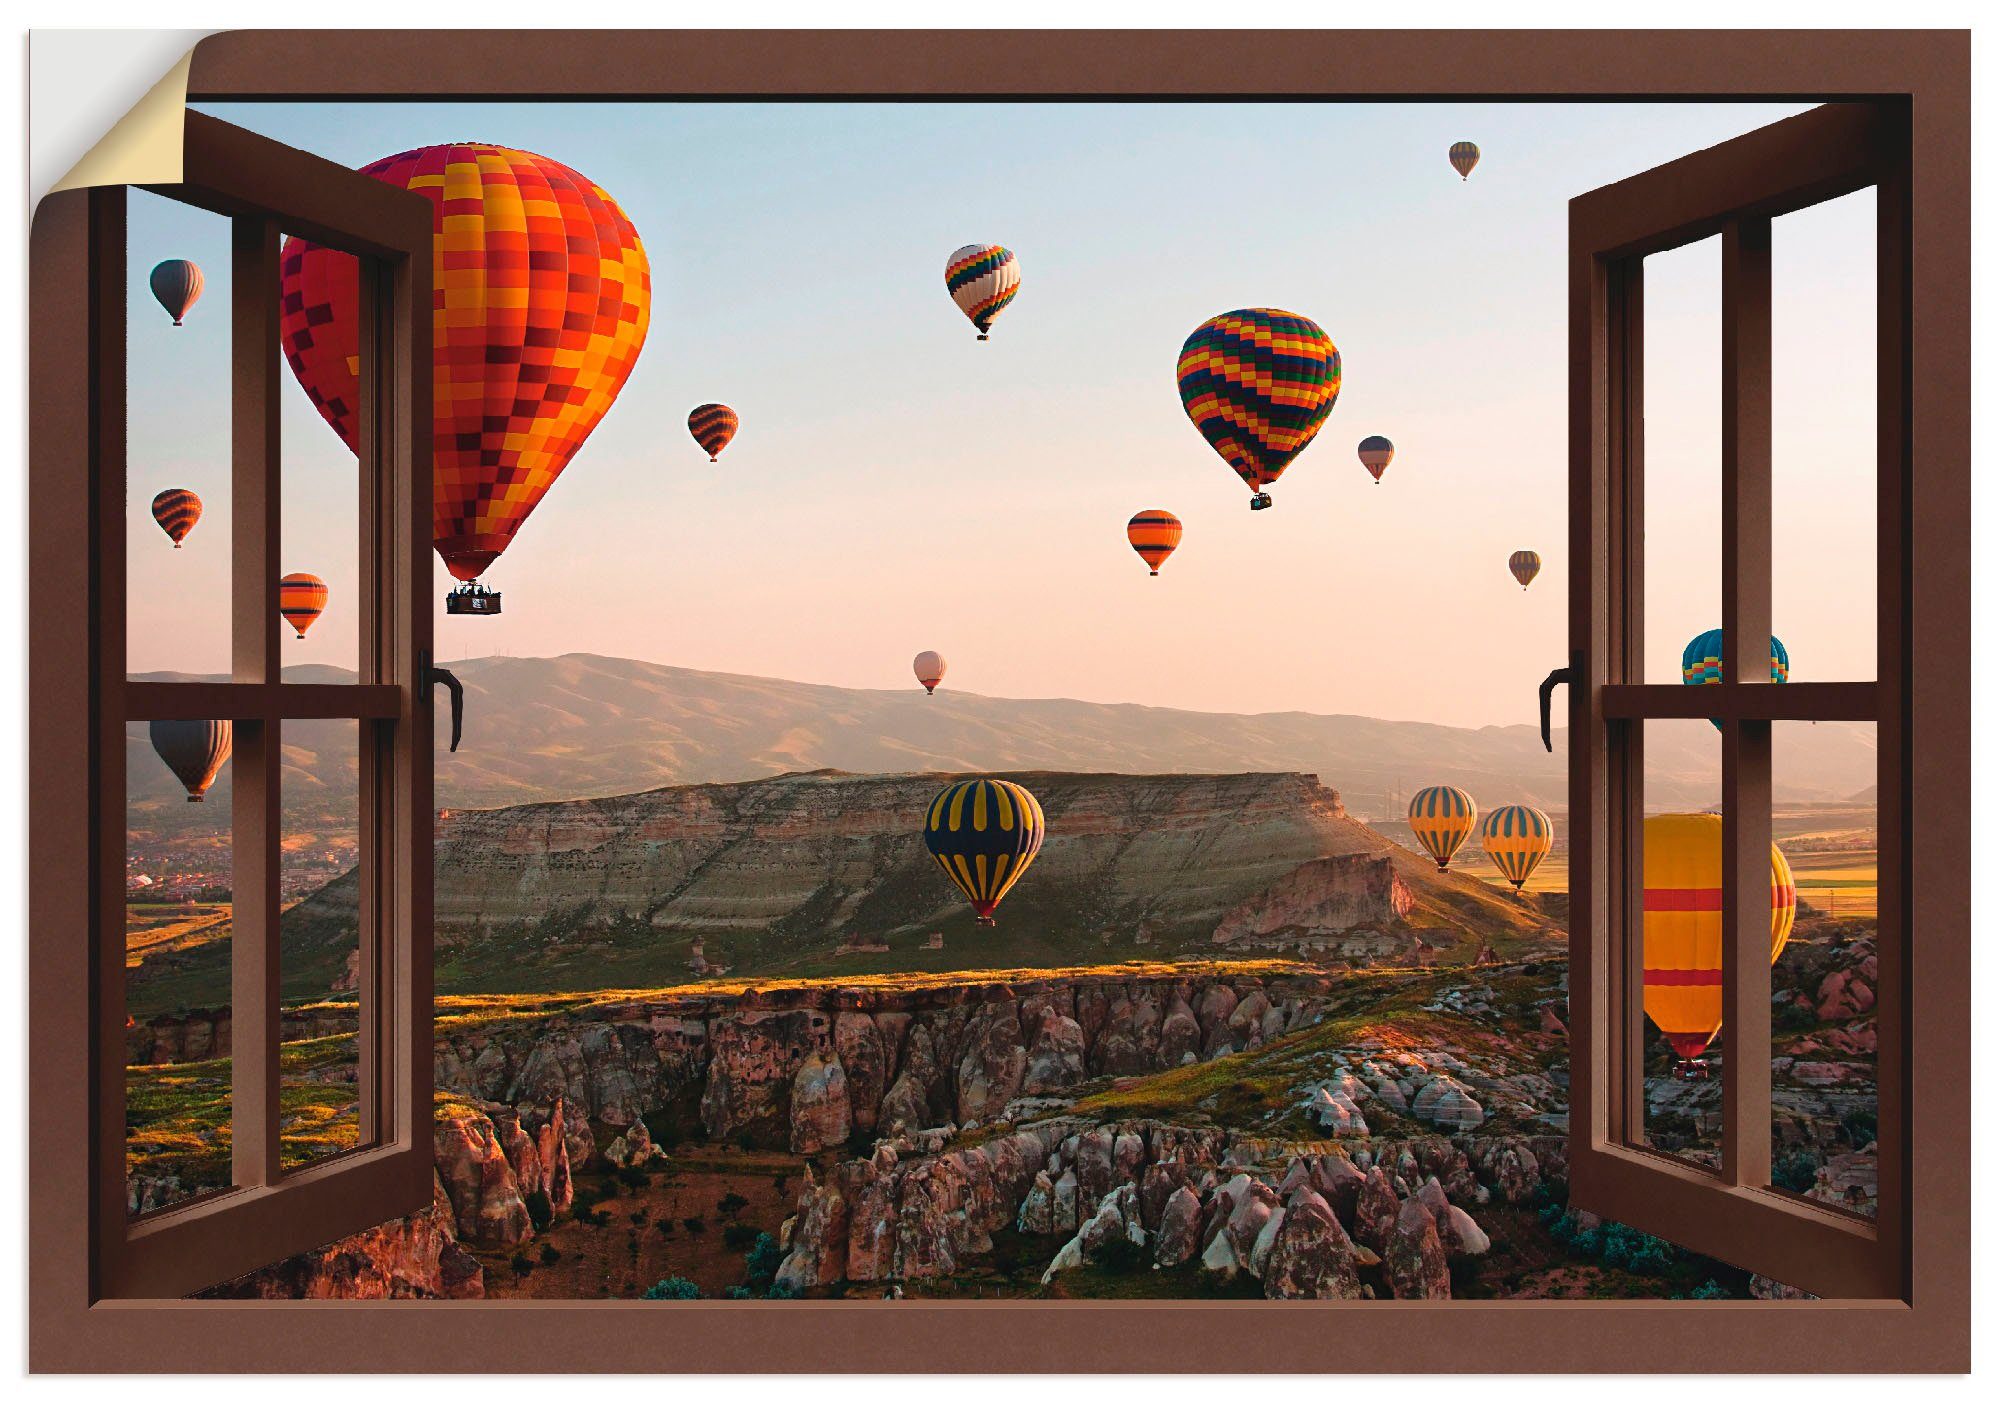 Artland Artprint Blik uit het venster Cappadocië ballonvaart in vele afmetingen & productsoorten - artprint van aluminium / artprint voor buiten, artprint op linnen, poster, muurst